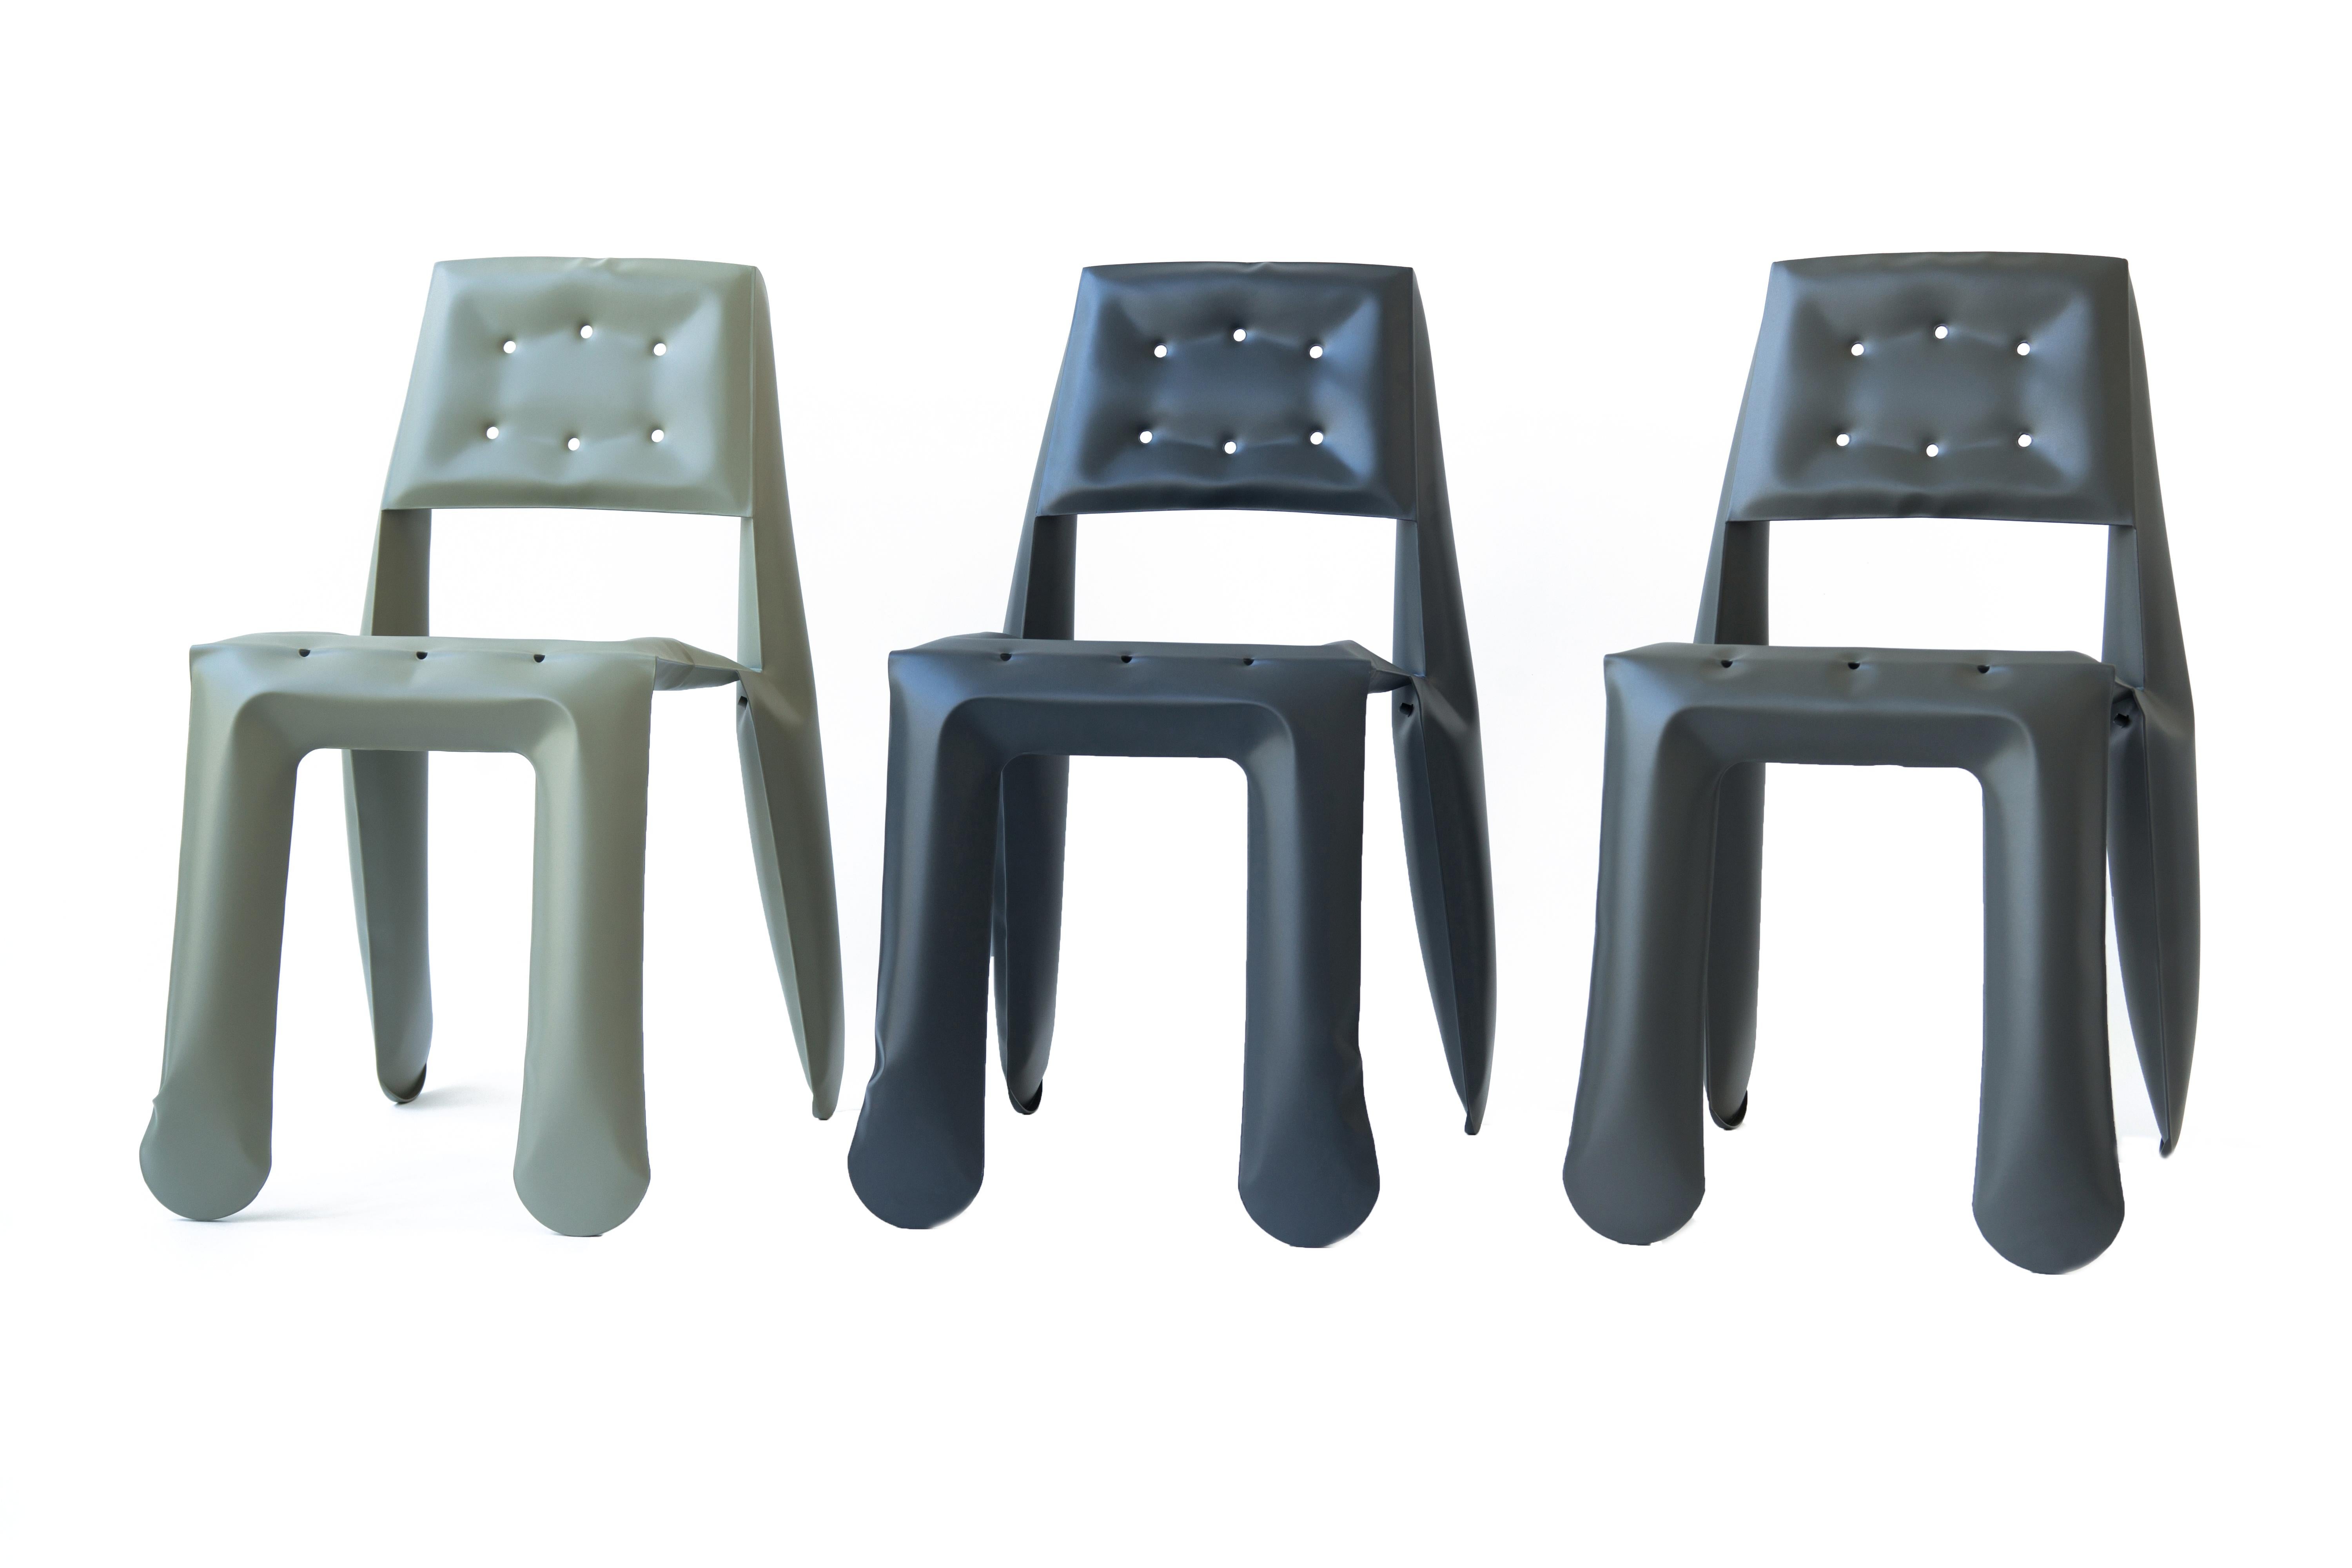 Umbra Grey Carbon Steel Chippensteel 0.5 Sculptural Chair by Zieta For Sale 4